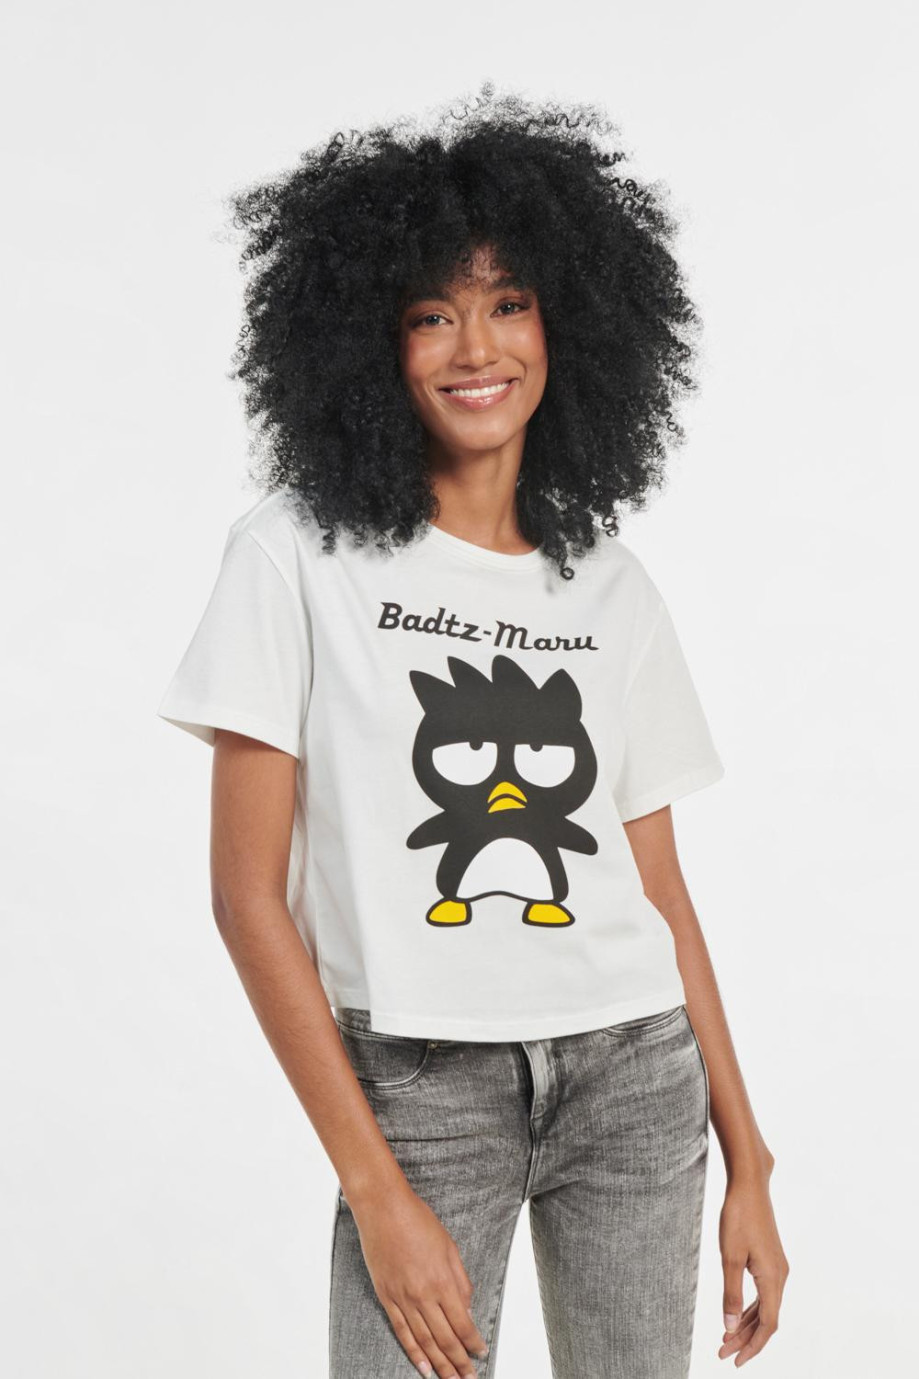 Camiseta crema clara crop top con diseño de Hello Kitty y manga corta